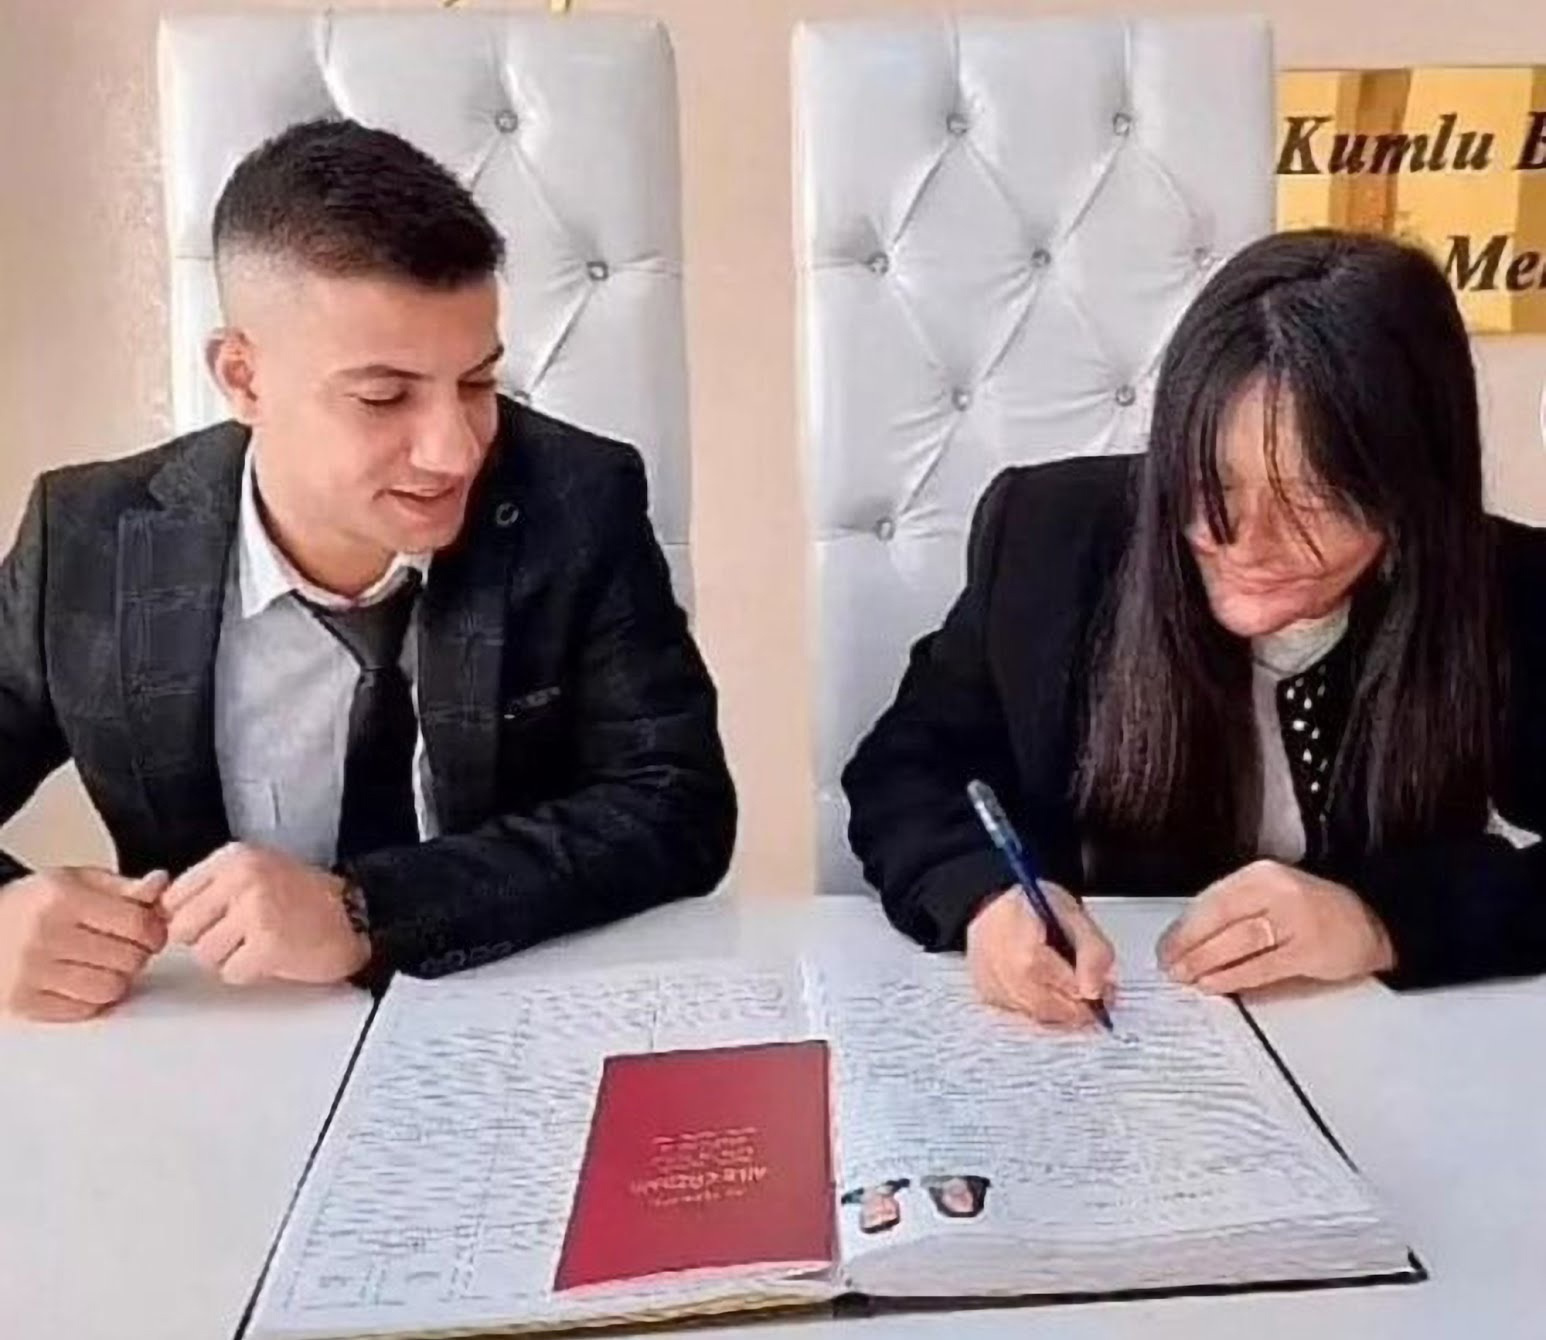 сын министра казахстана вышел замуж за мужчину